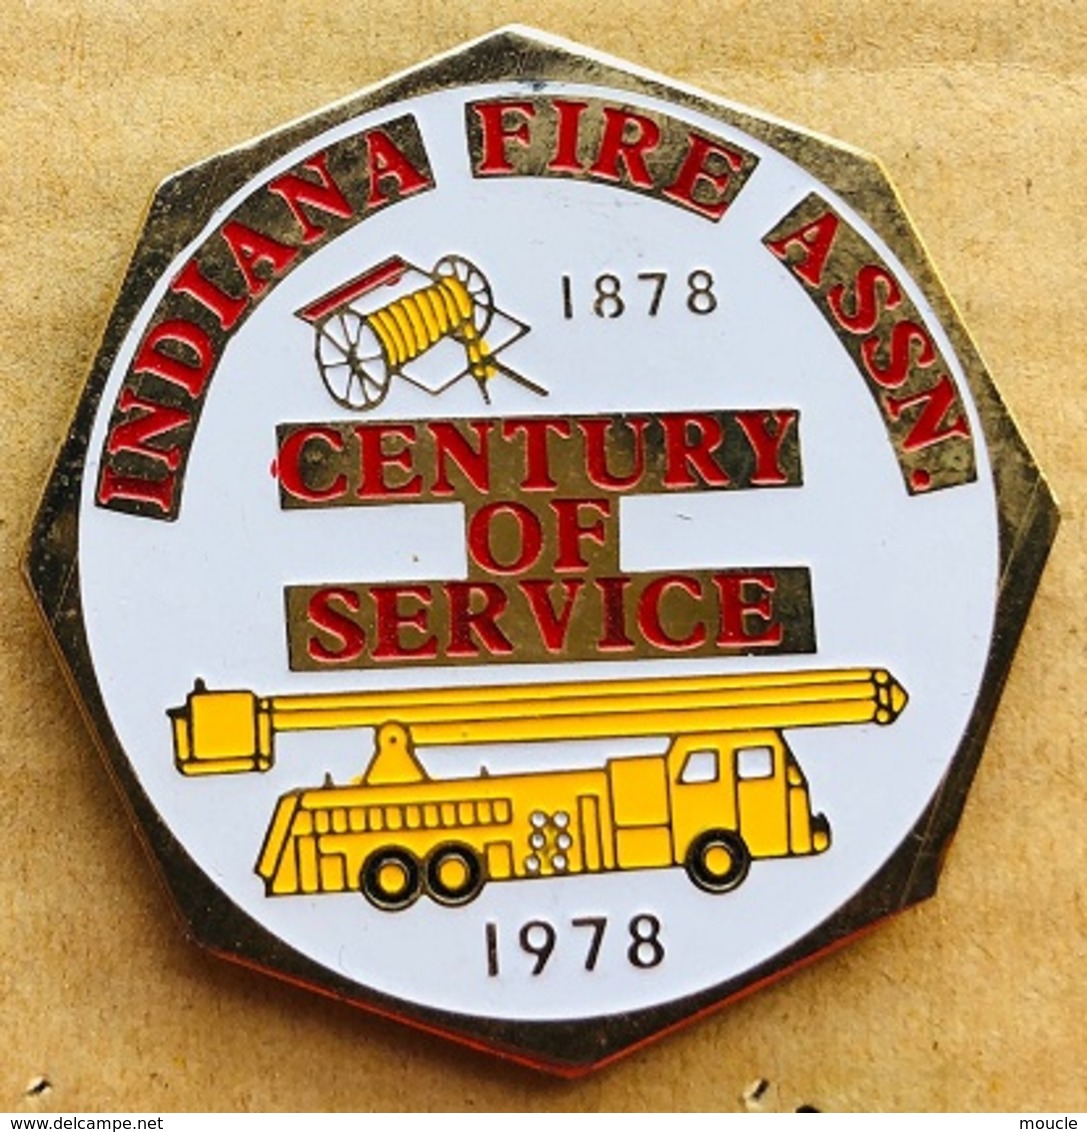 SAPEURS POMPIERS - SERVICE DU FEU - INDIANA FIRE ASSN - 1878/ 1978 - CENTURY OF SERVICE - CAMION - TRUCK - USA- (23) - Firemen